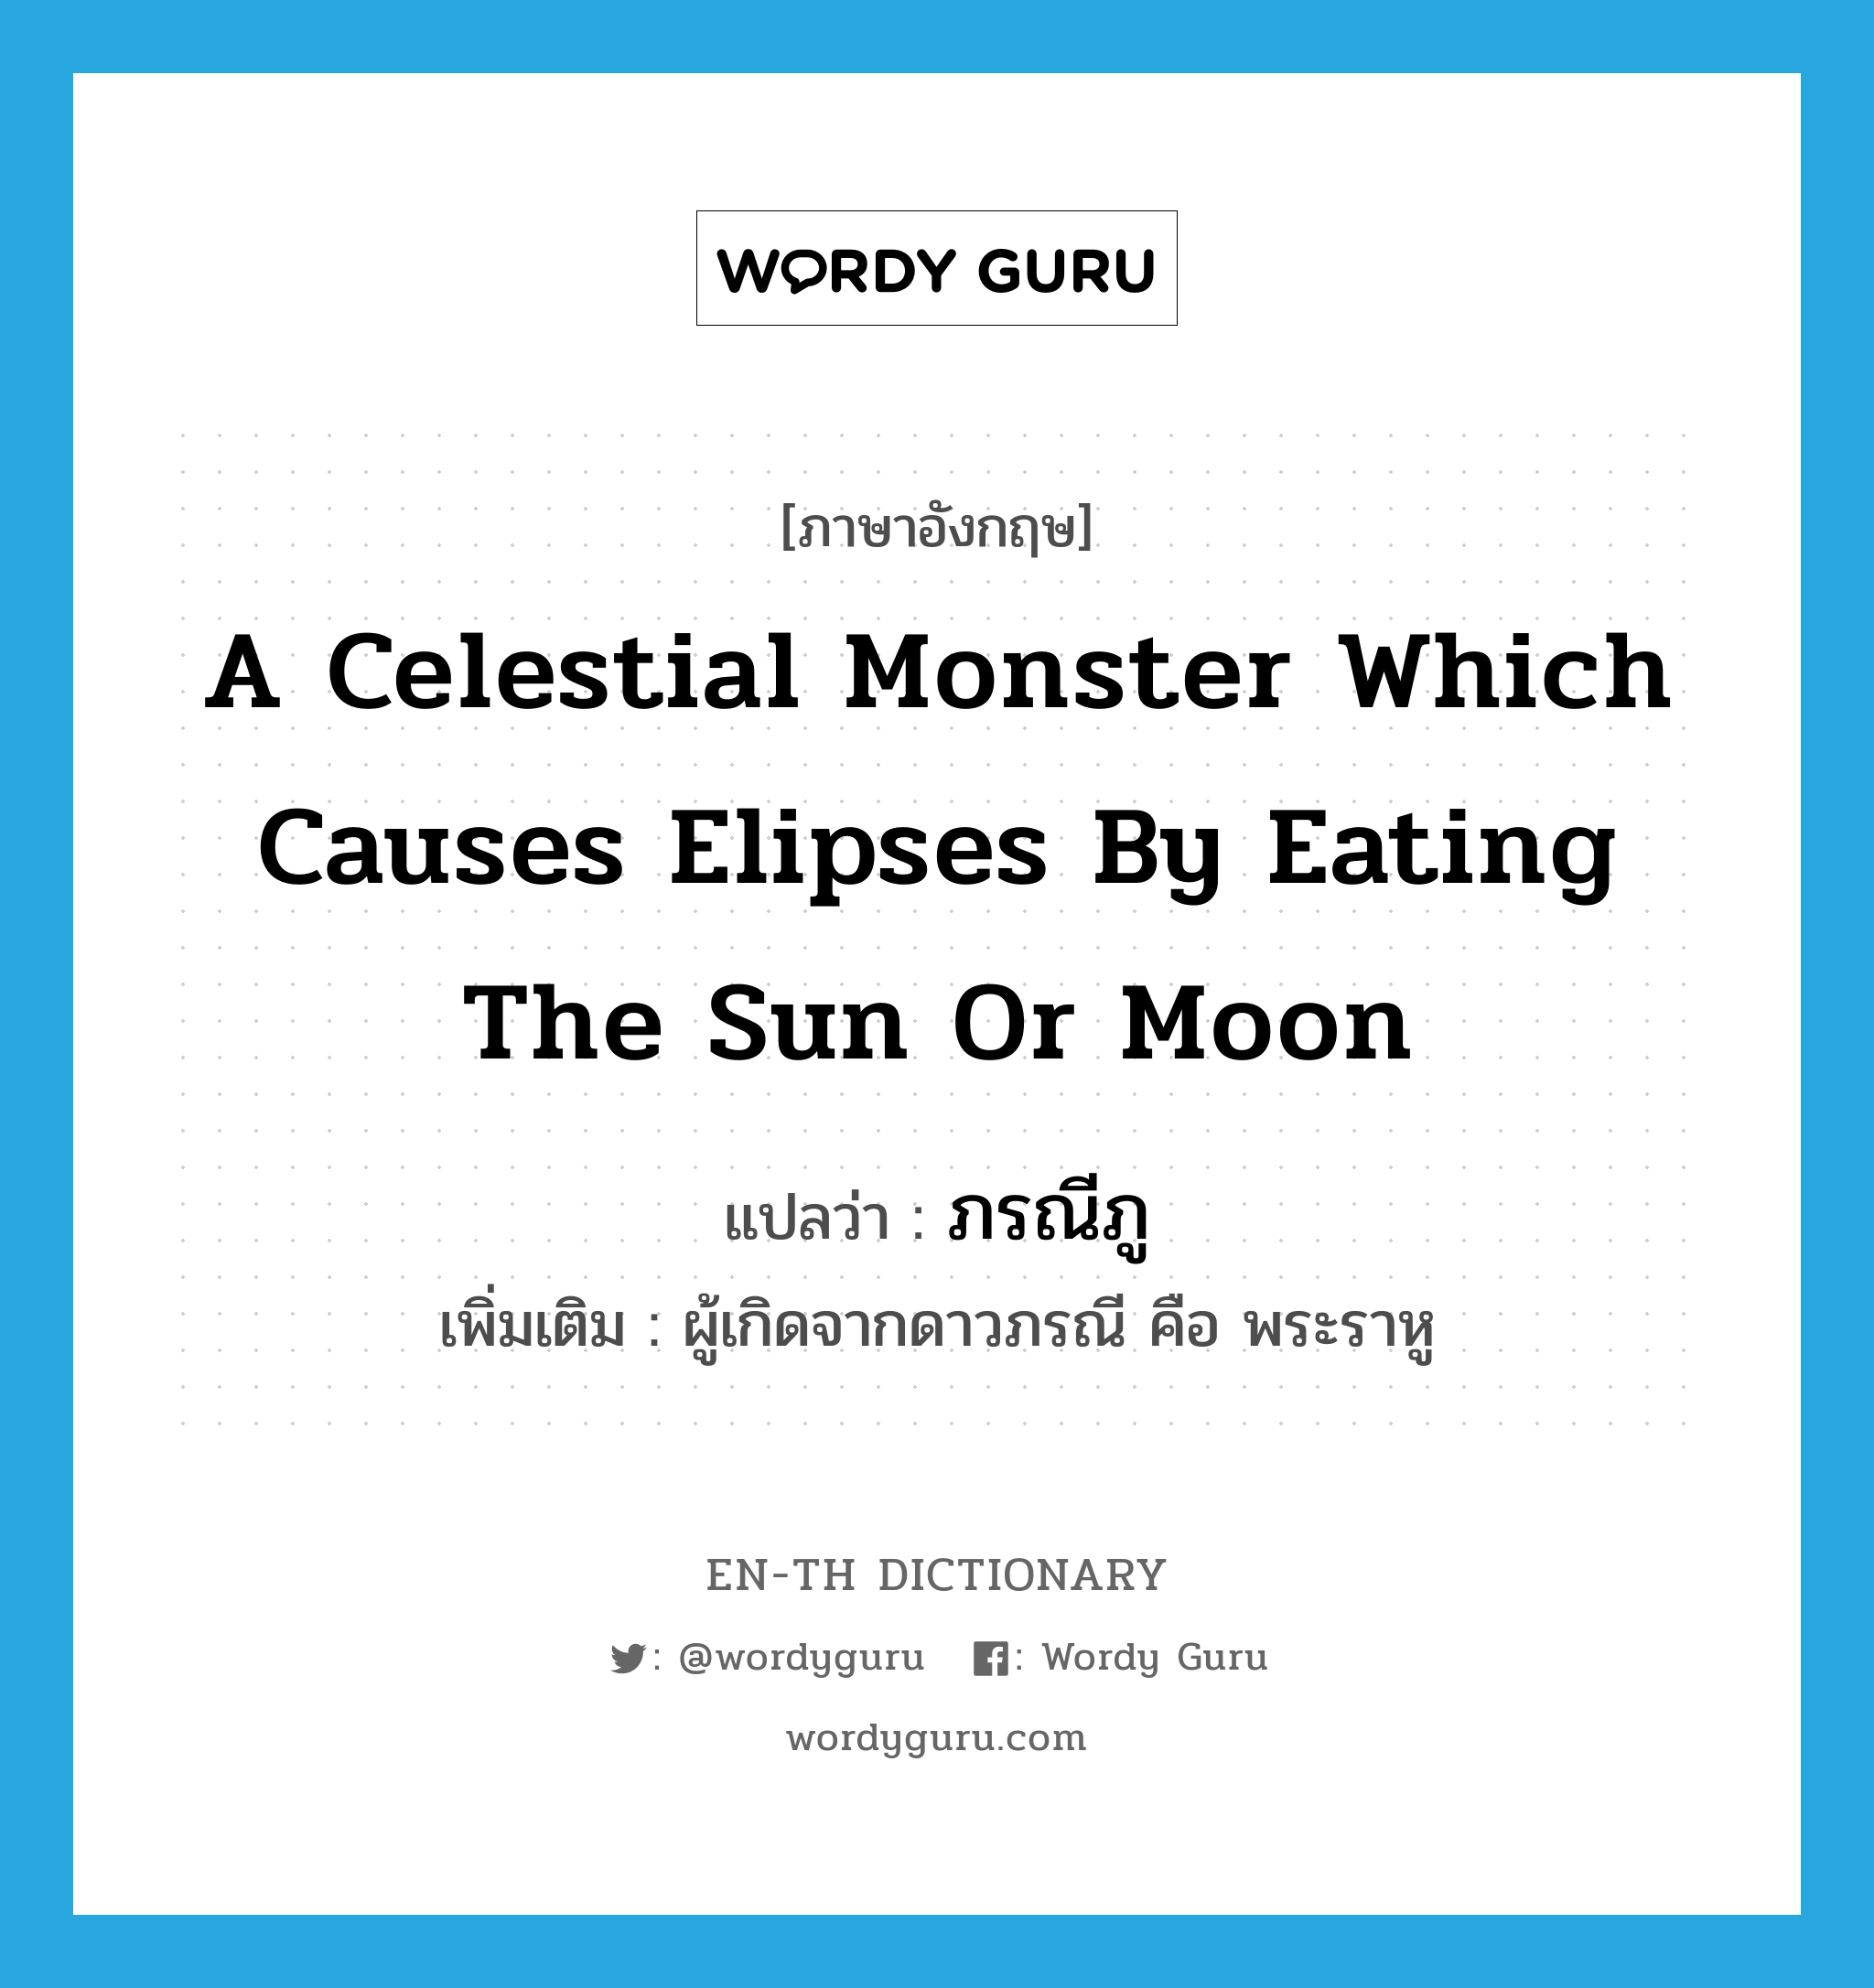 ภรณีภู ภาษาอังกฤษ?, คำศัพท์ภาษาอังกฤษ ภรณีภู แปลว่า a celestial monster which causes elipses by eating the sun or moon ประเภท N เพิ่มเติม ผู้เกิดจากดาวภรณี คือ พระราหู หมวด N